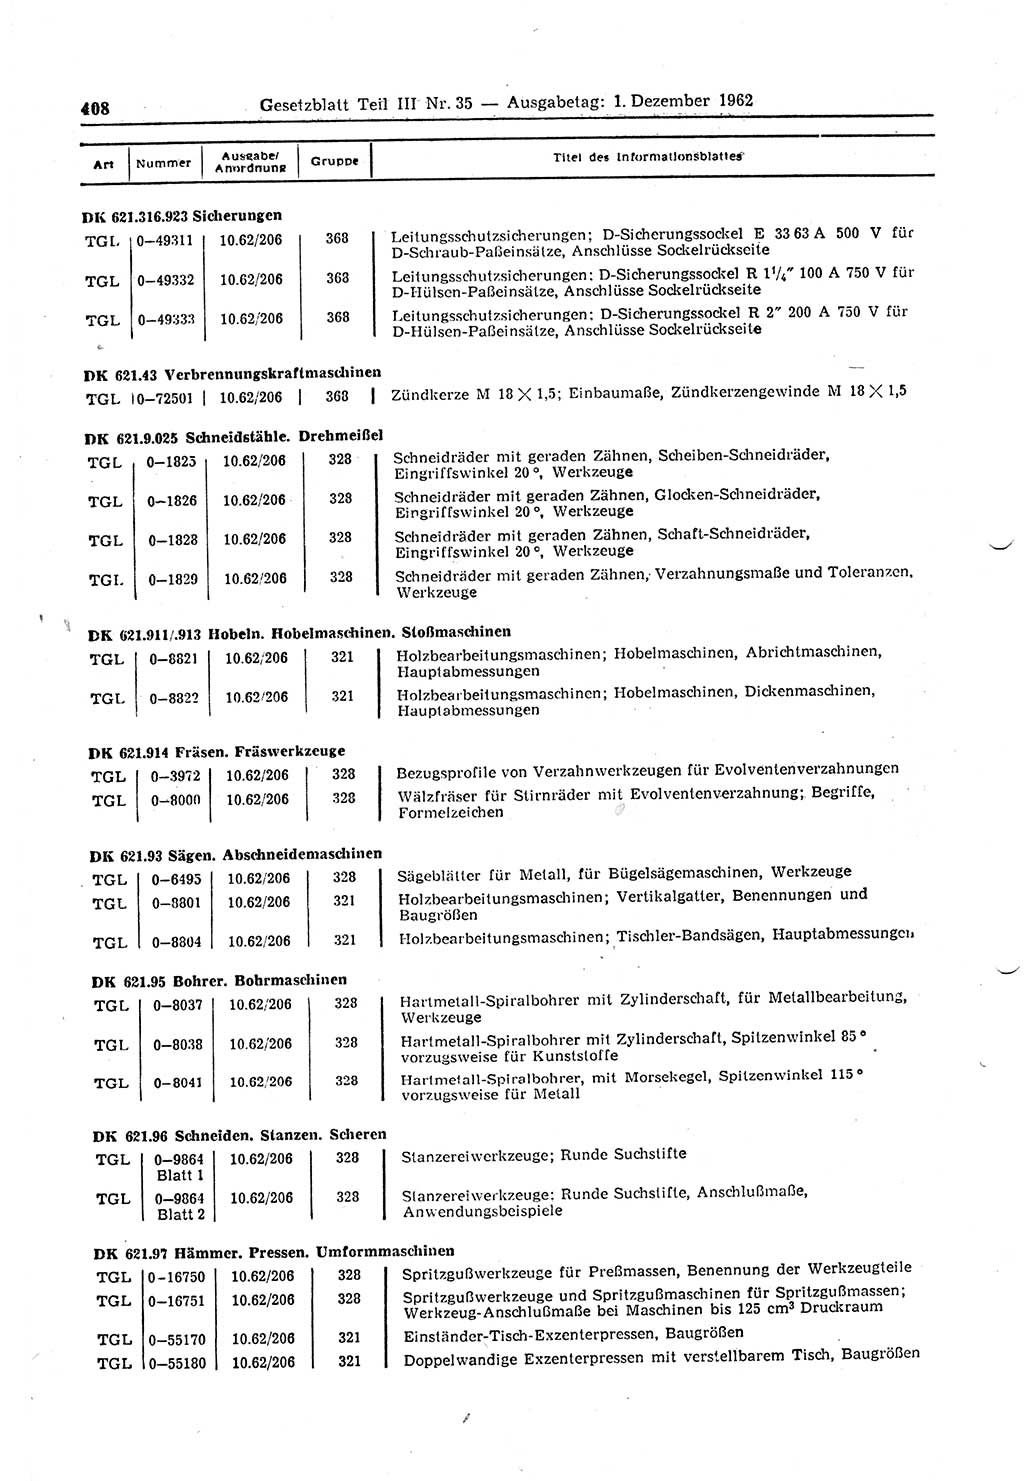 Gesetzblatt (GBl.) der Deutschen Demokratischen Republik (DDR) Teil ⅠⅠⅠ 1962, Seite 408 (GBl. DDR ⅠⅠⅠ 1962, S. 408)